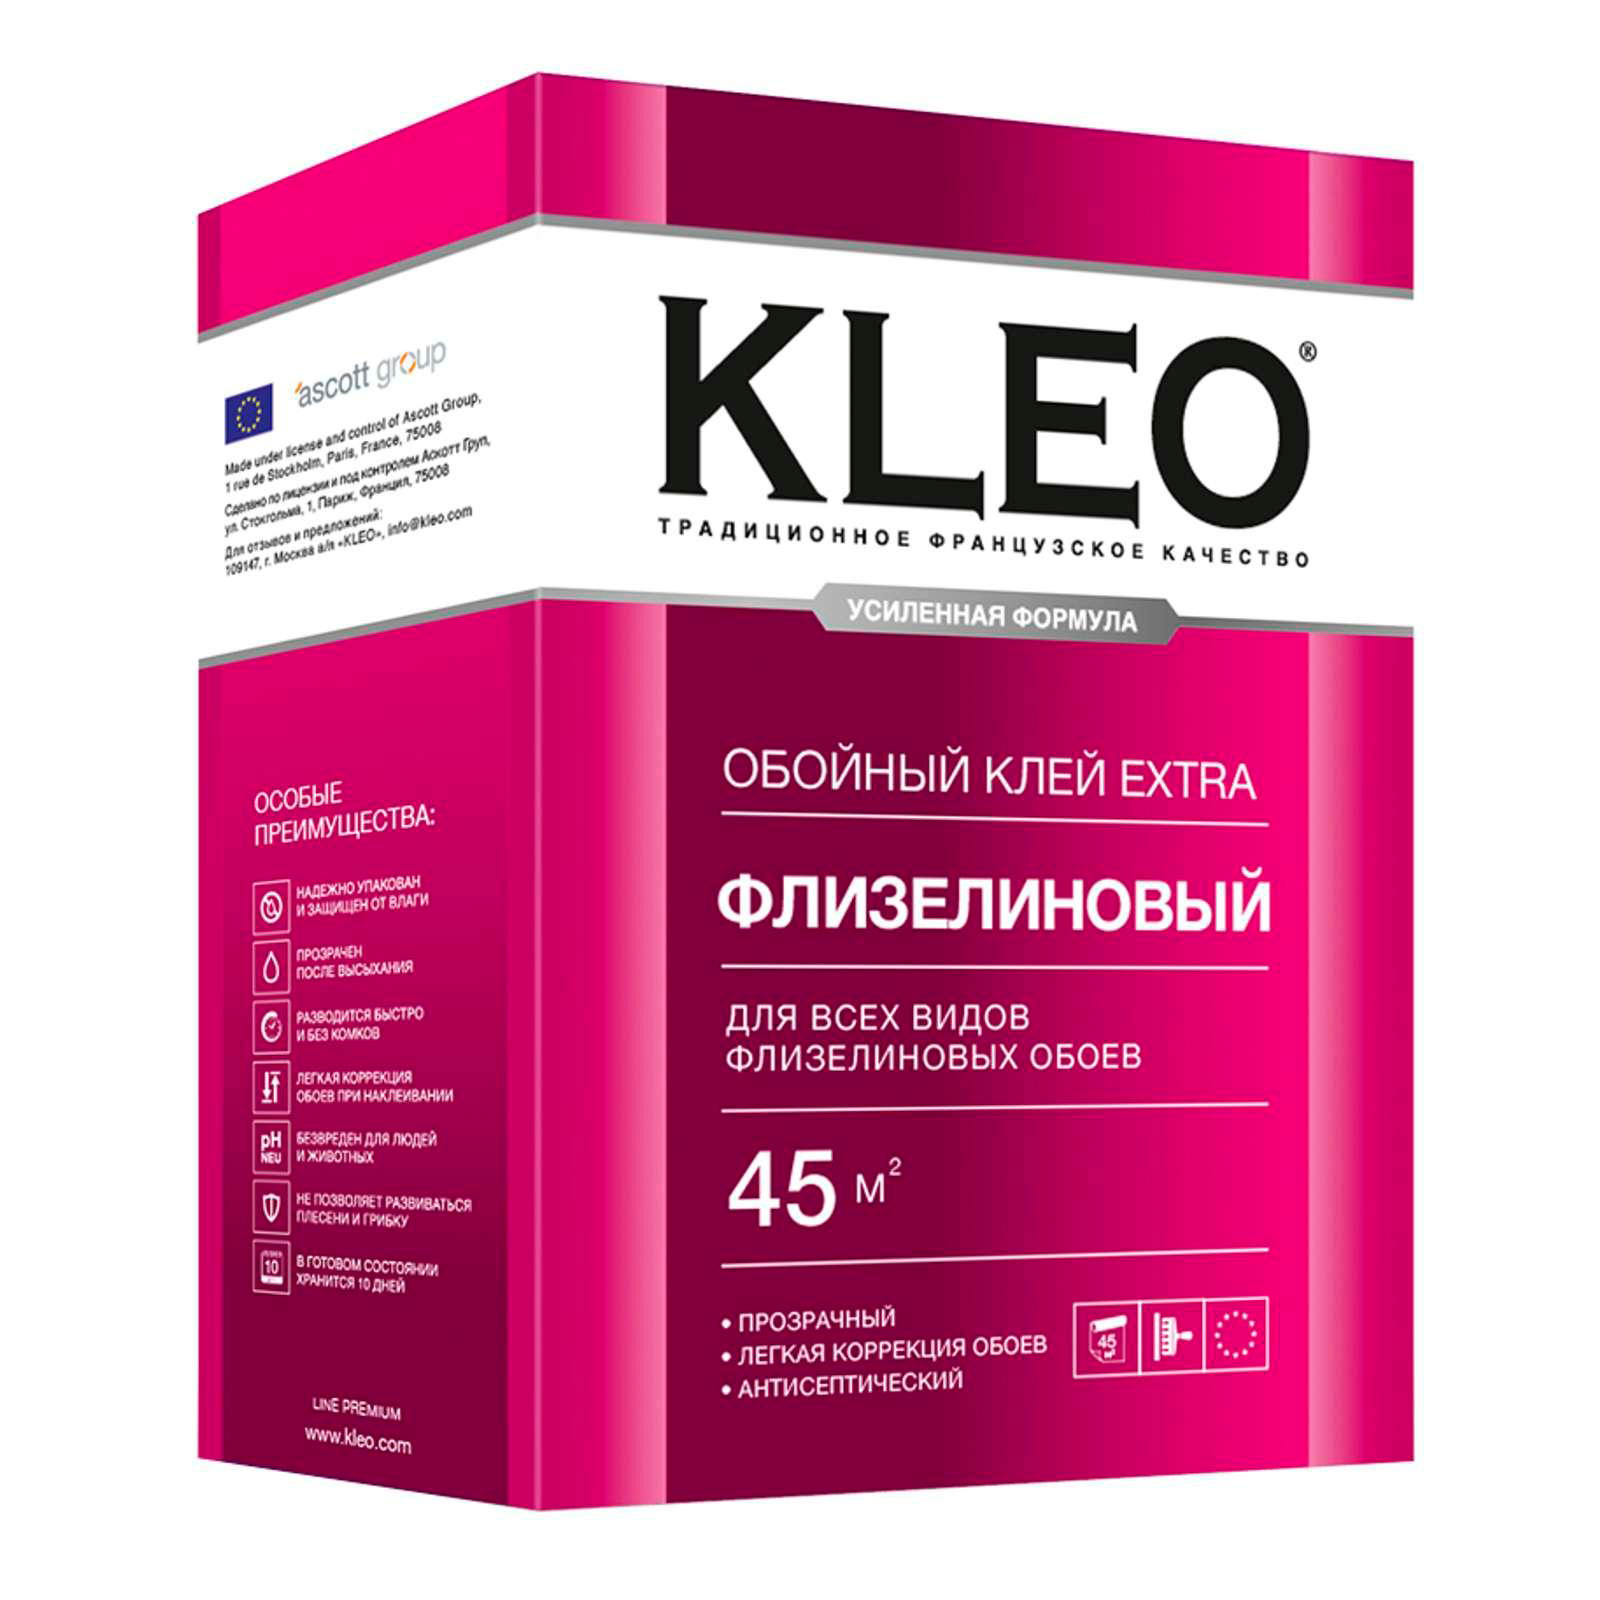 Купить kleo (клео) extra клей обойный флизелиновый от официального дилера KLEO